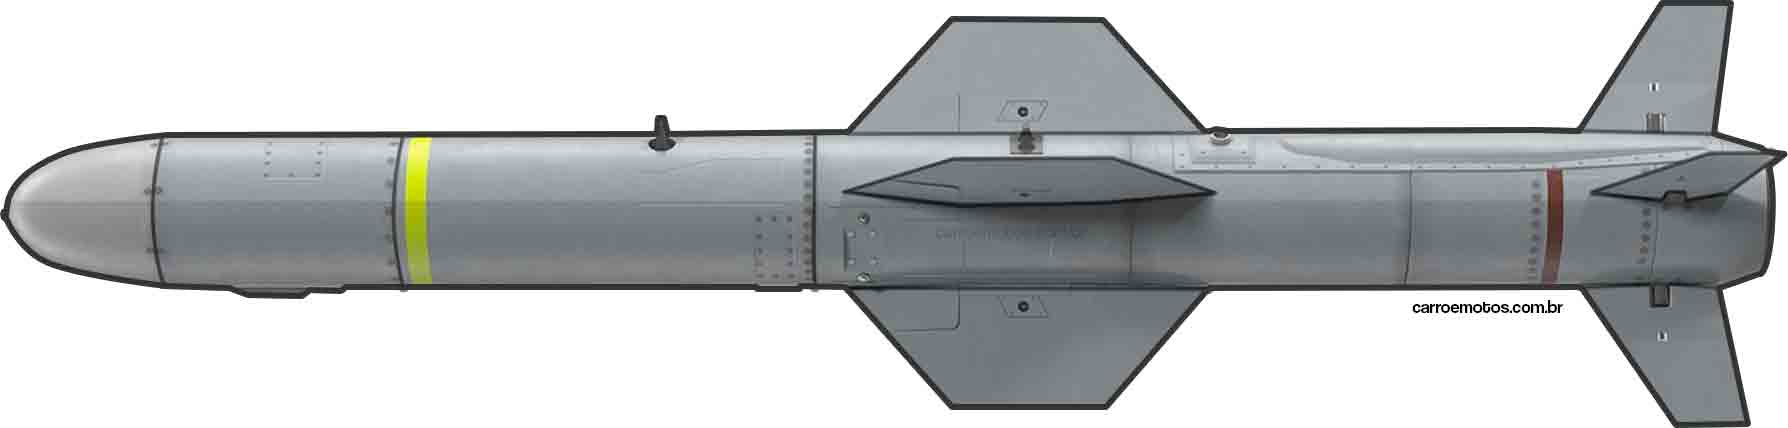 UGM-84L 하푼 블록 II 대함 미사일. 사진: Carro e motos